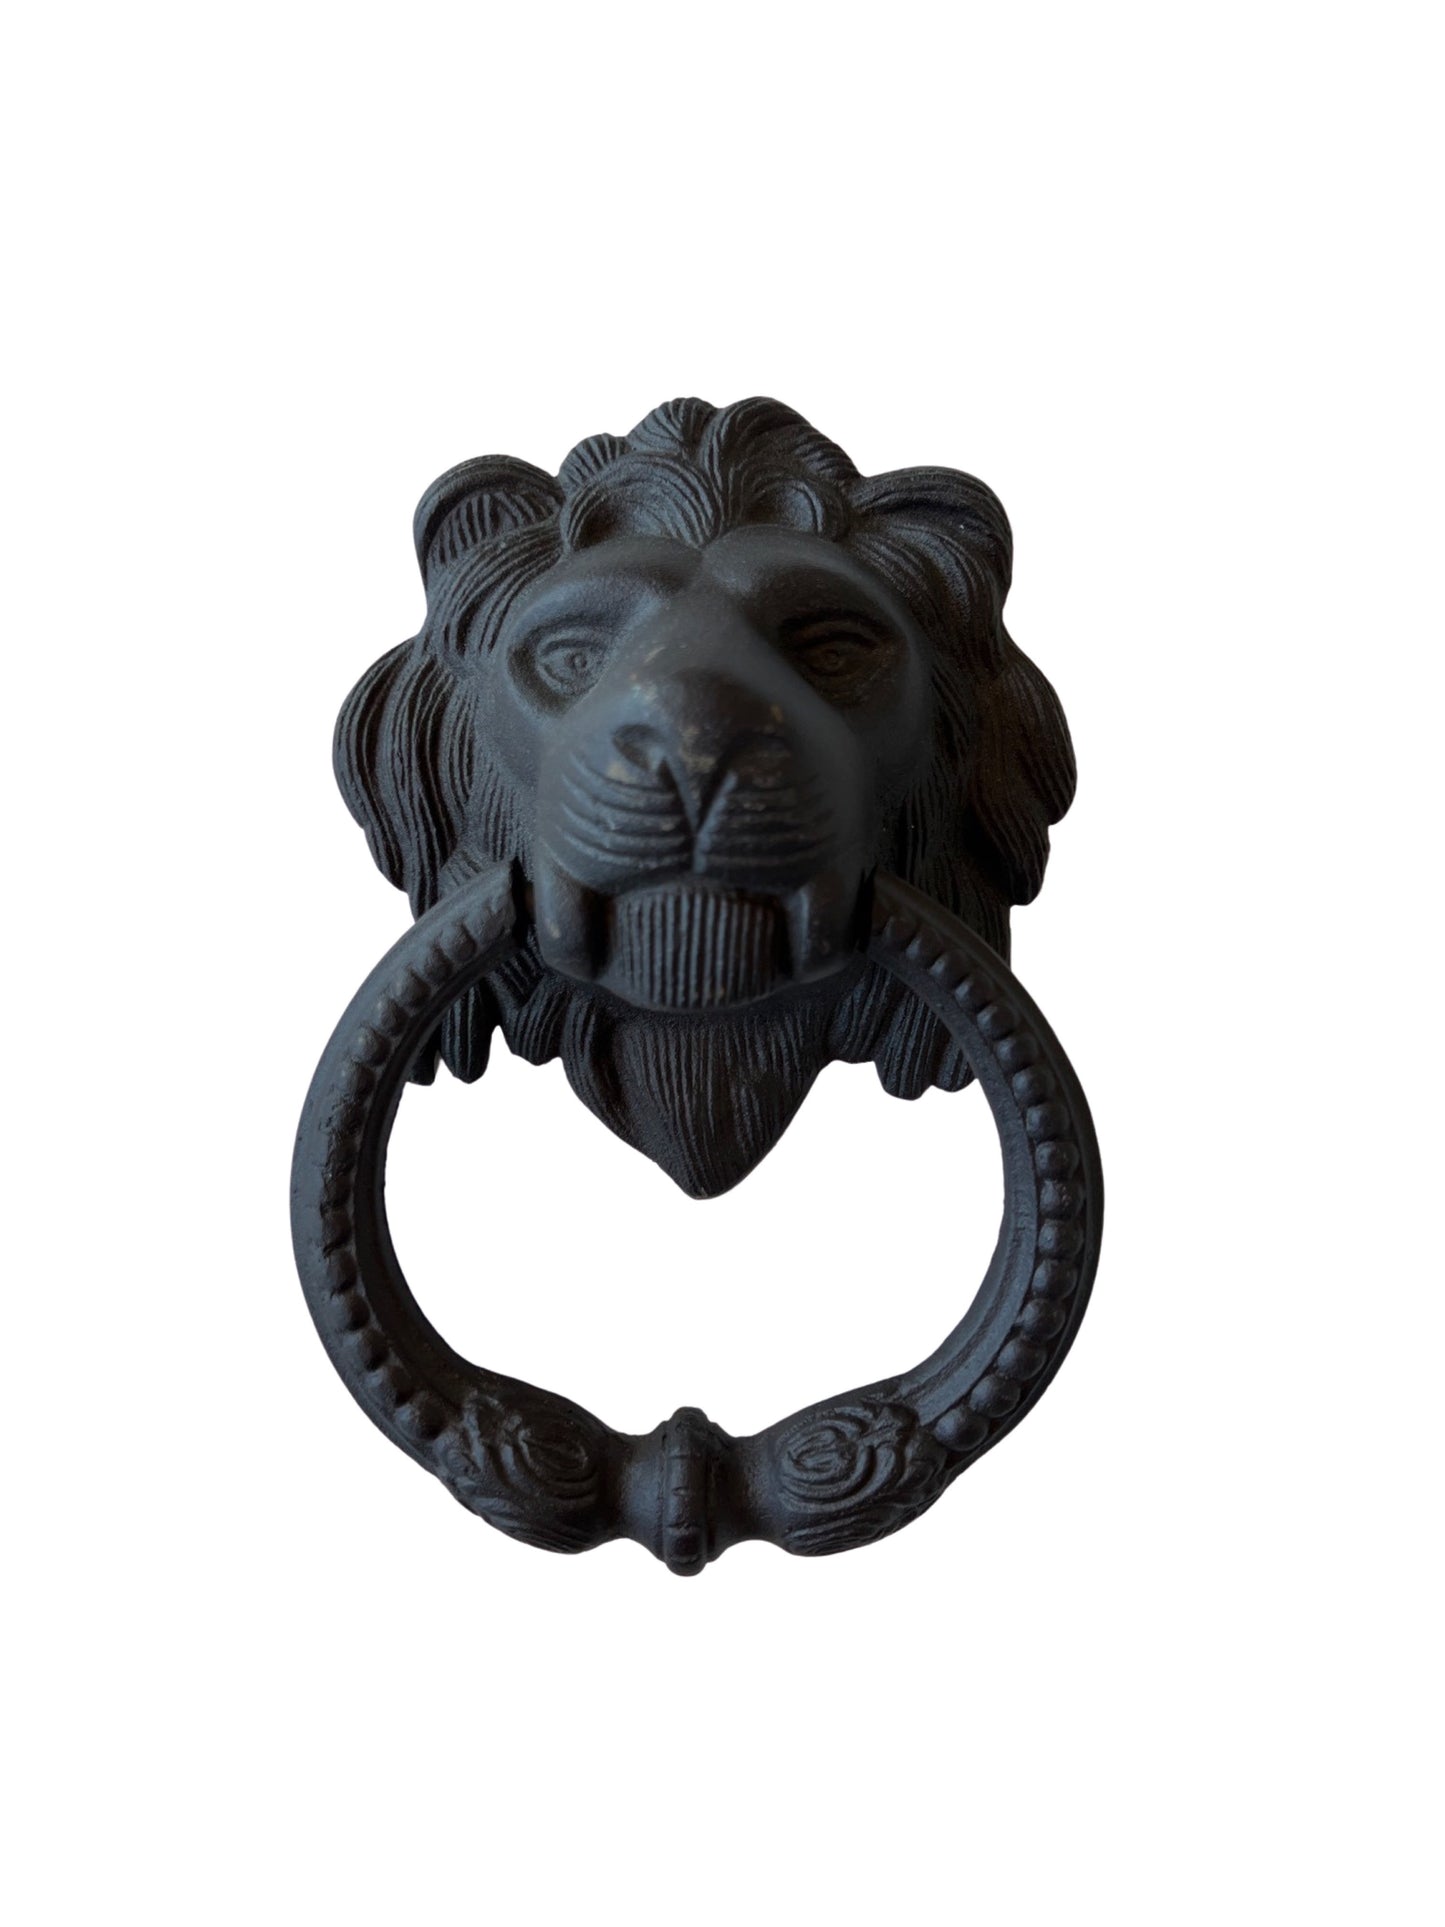 lion door knocker